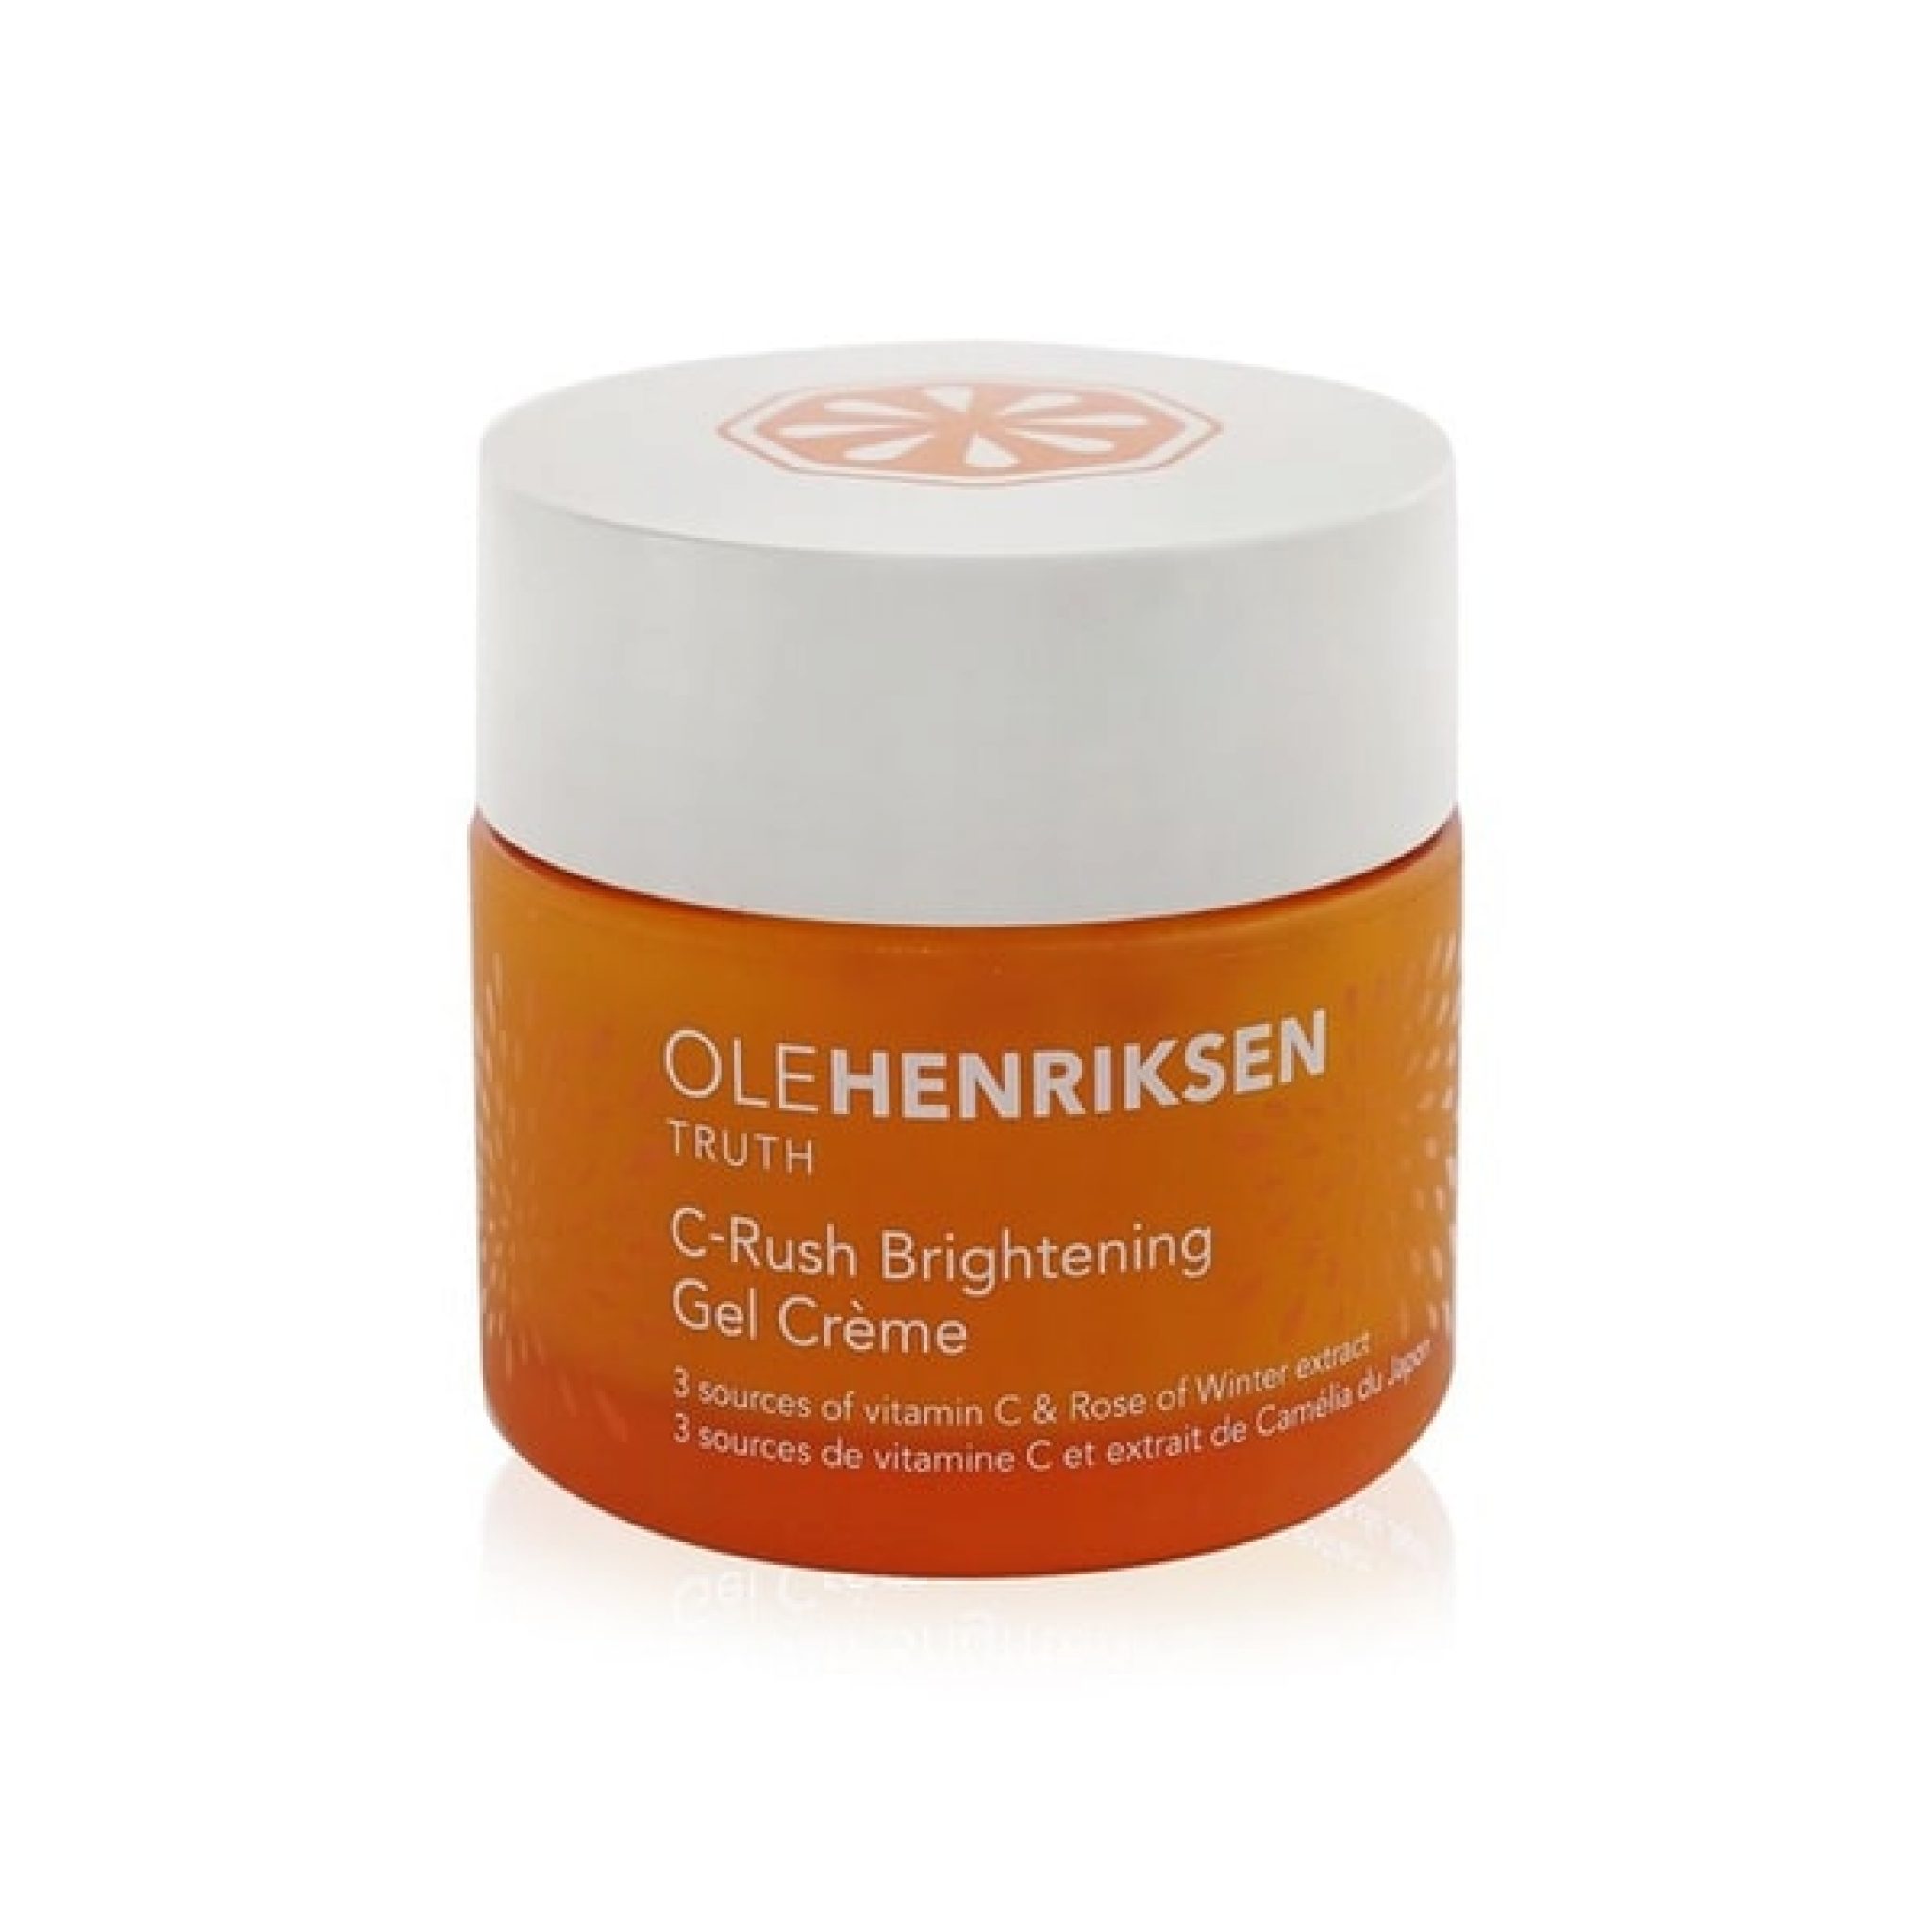 C-Rush Brightening Gel Crème - Ole Henriksen